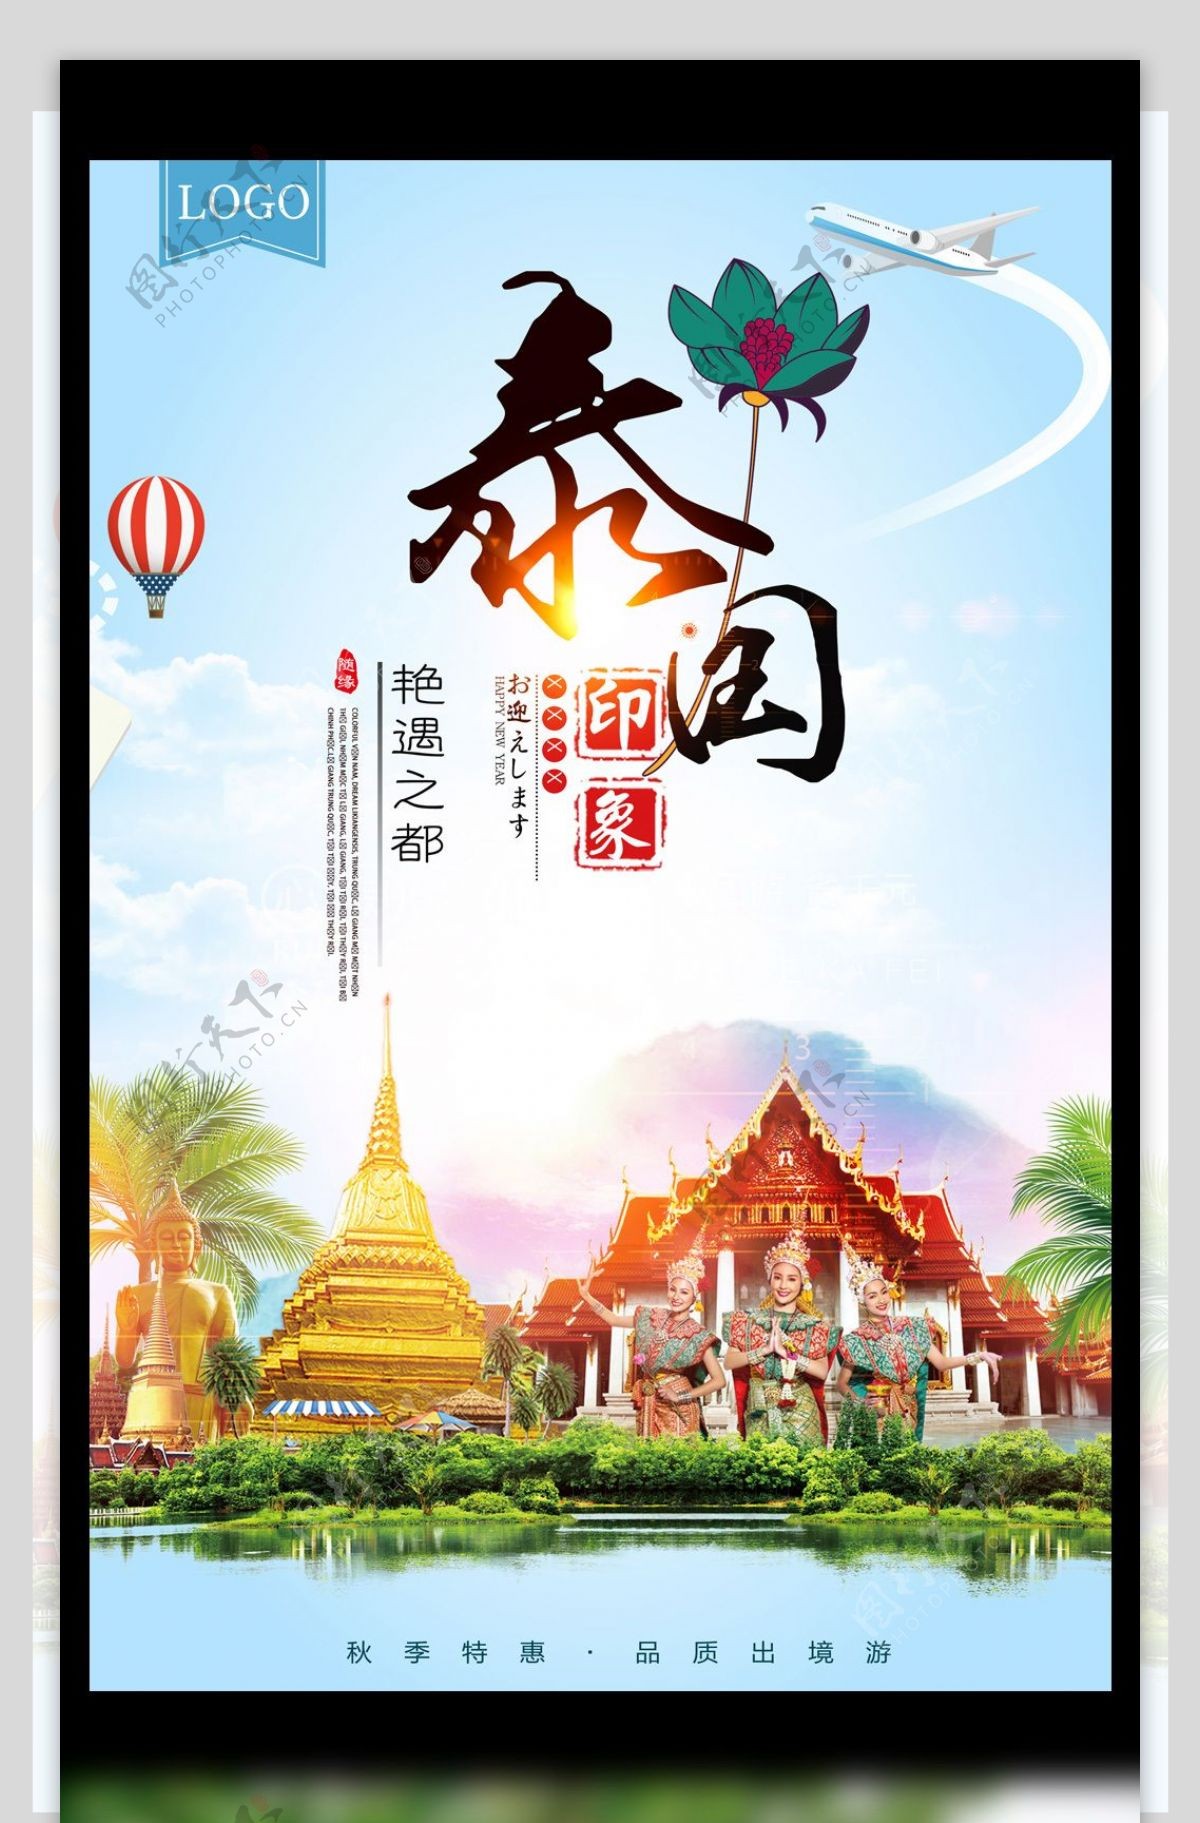 2017年蓝色高清出境游泰国印象宣传海报